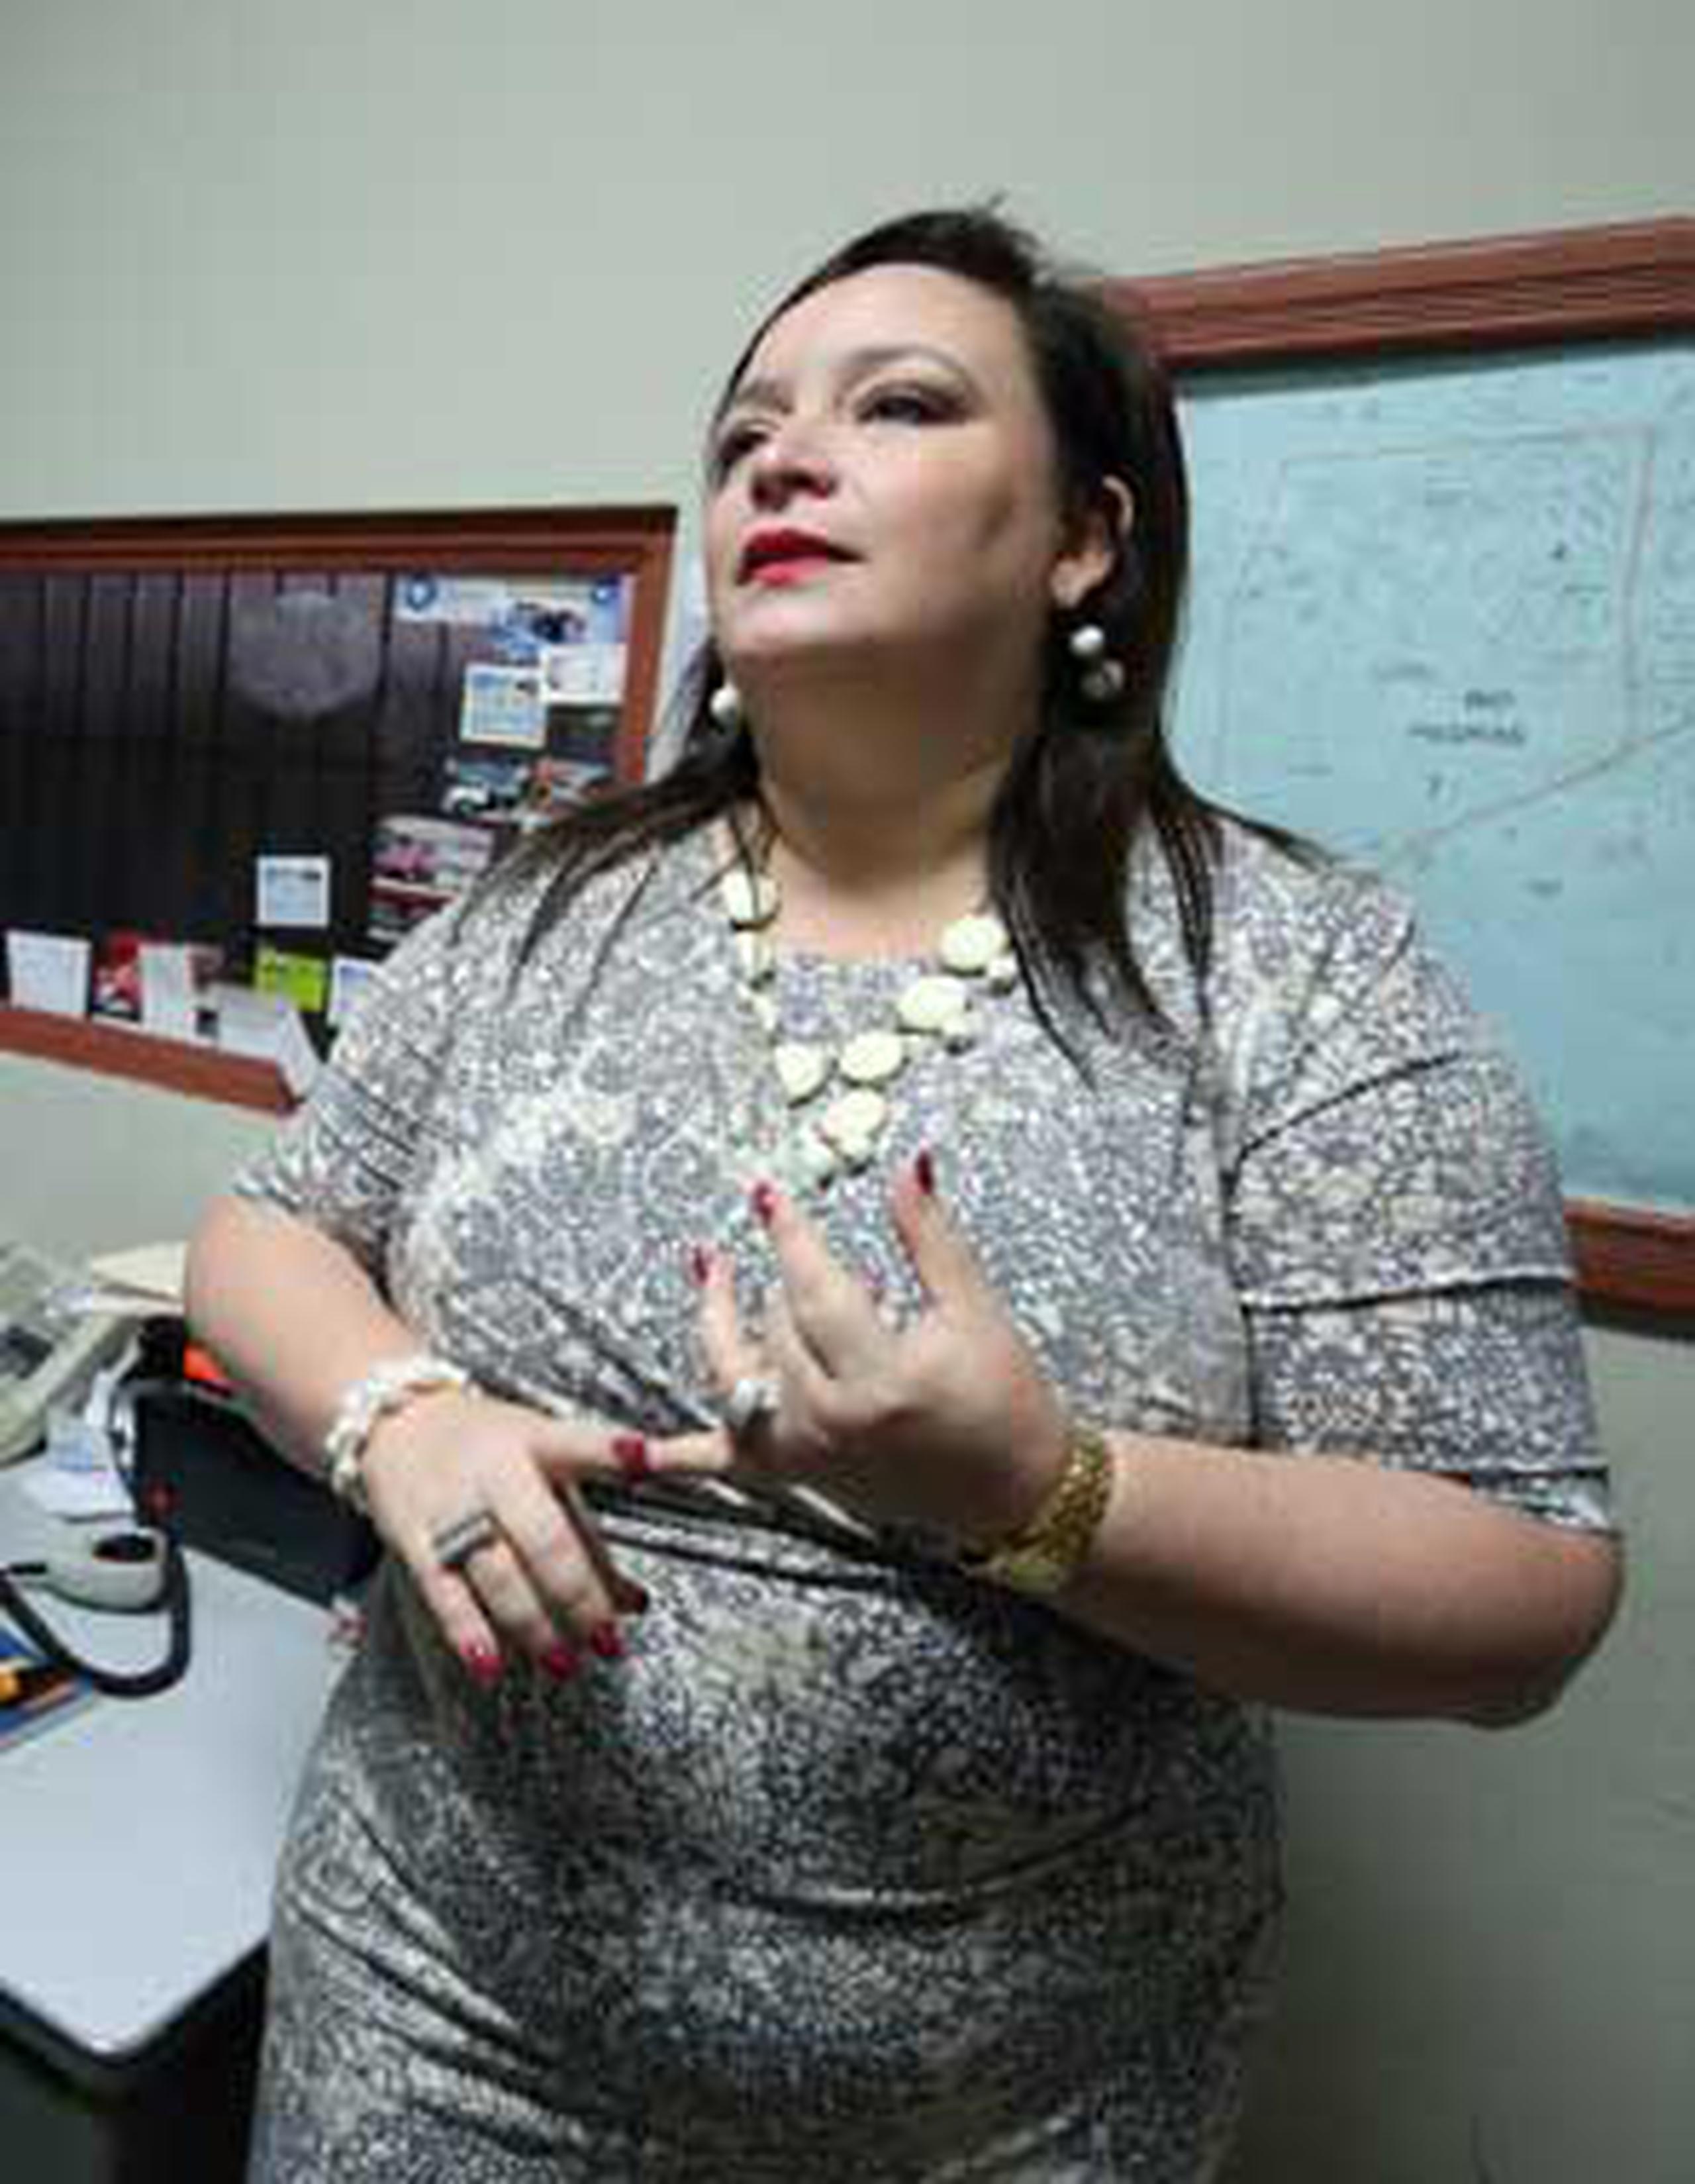 La representante popular Sonia Pacheco dijo que se iba a operar "la barriga". (Archivo)